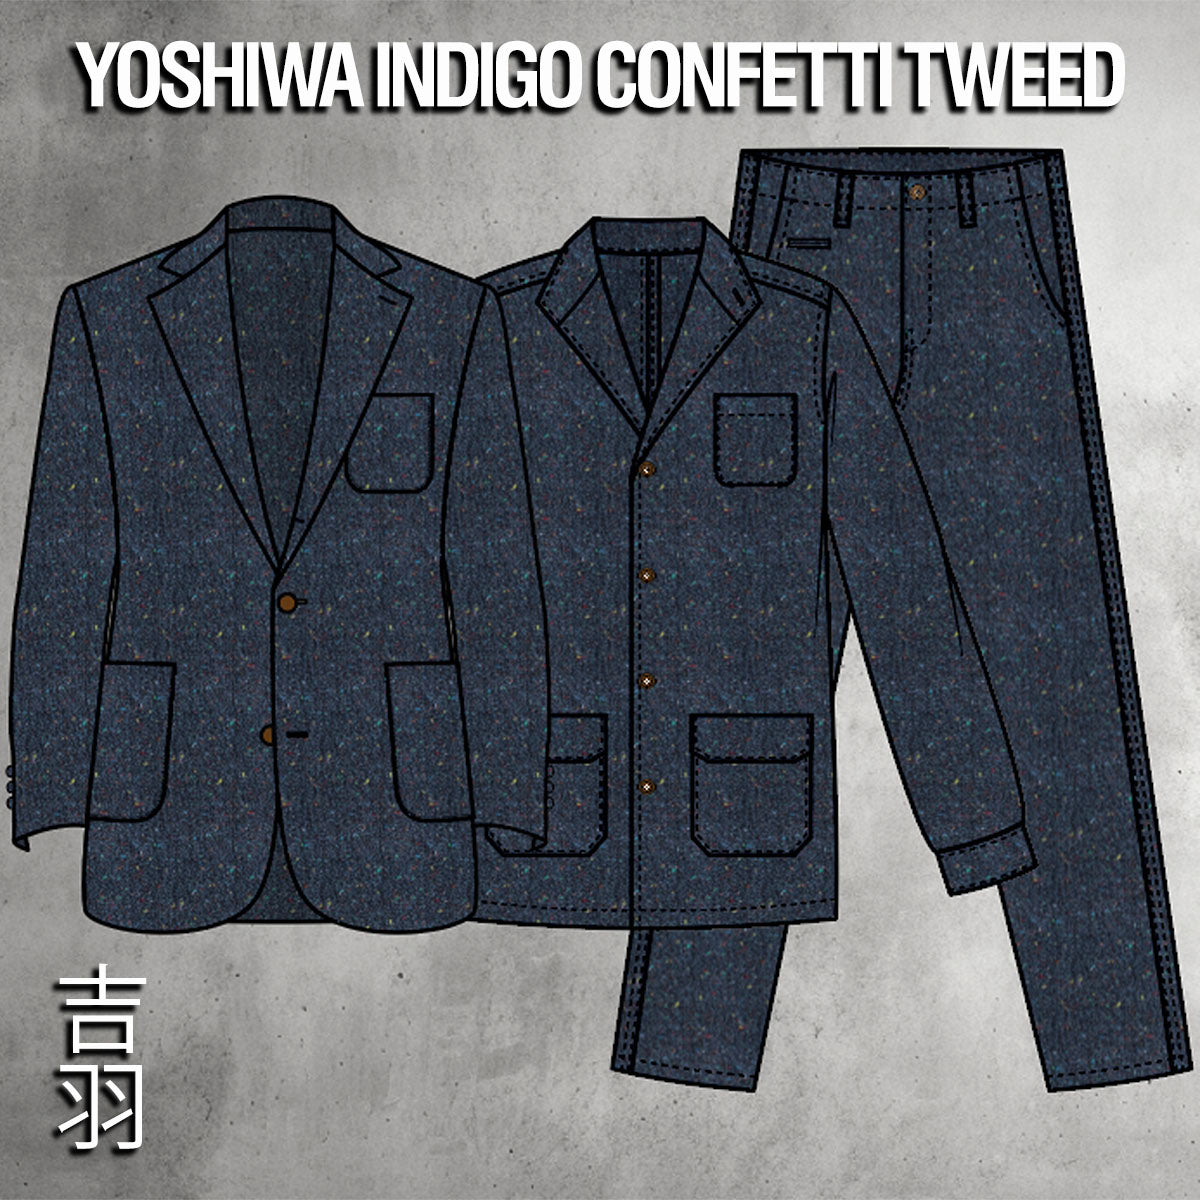 Custom Suits, Sportcoats, Doyles & Field Jackets Yoshiwa Indigo Tweed